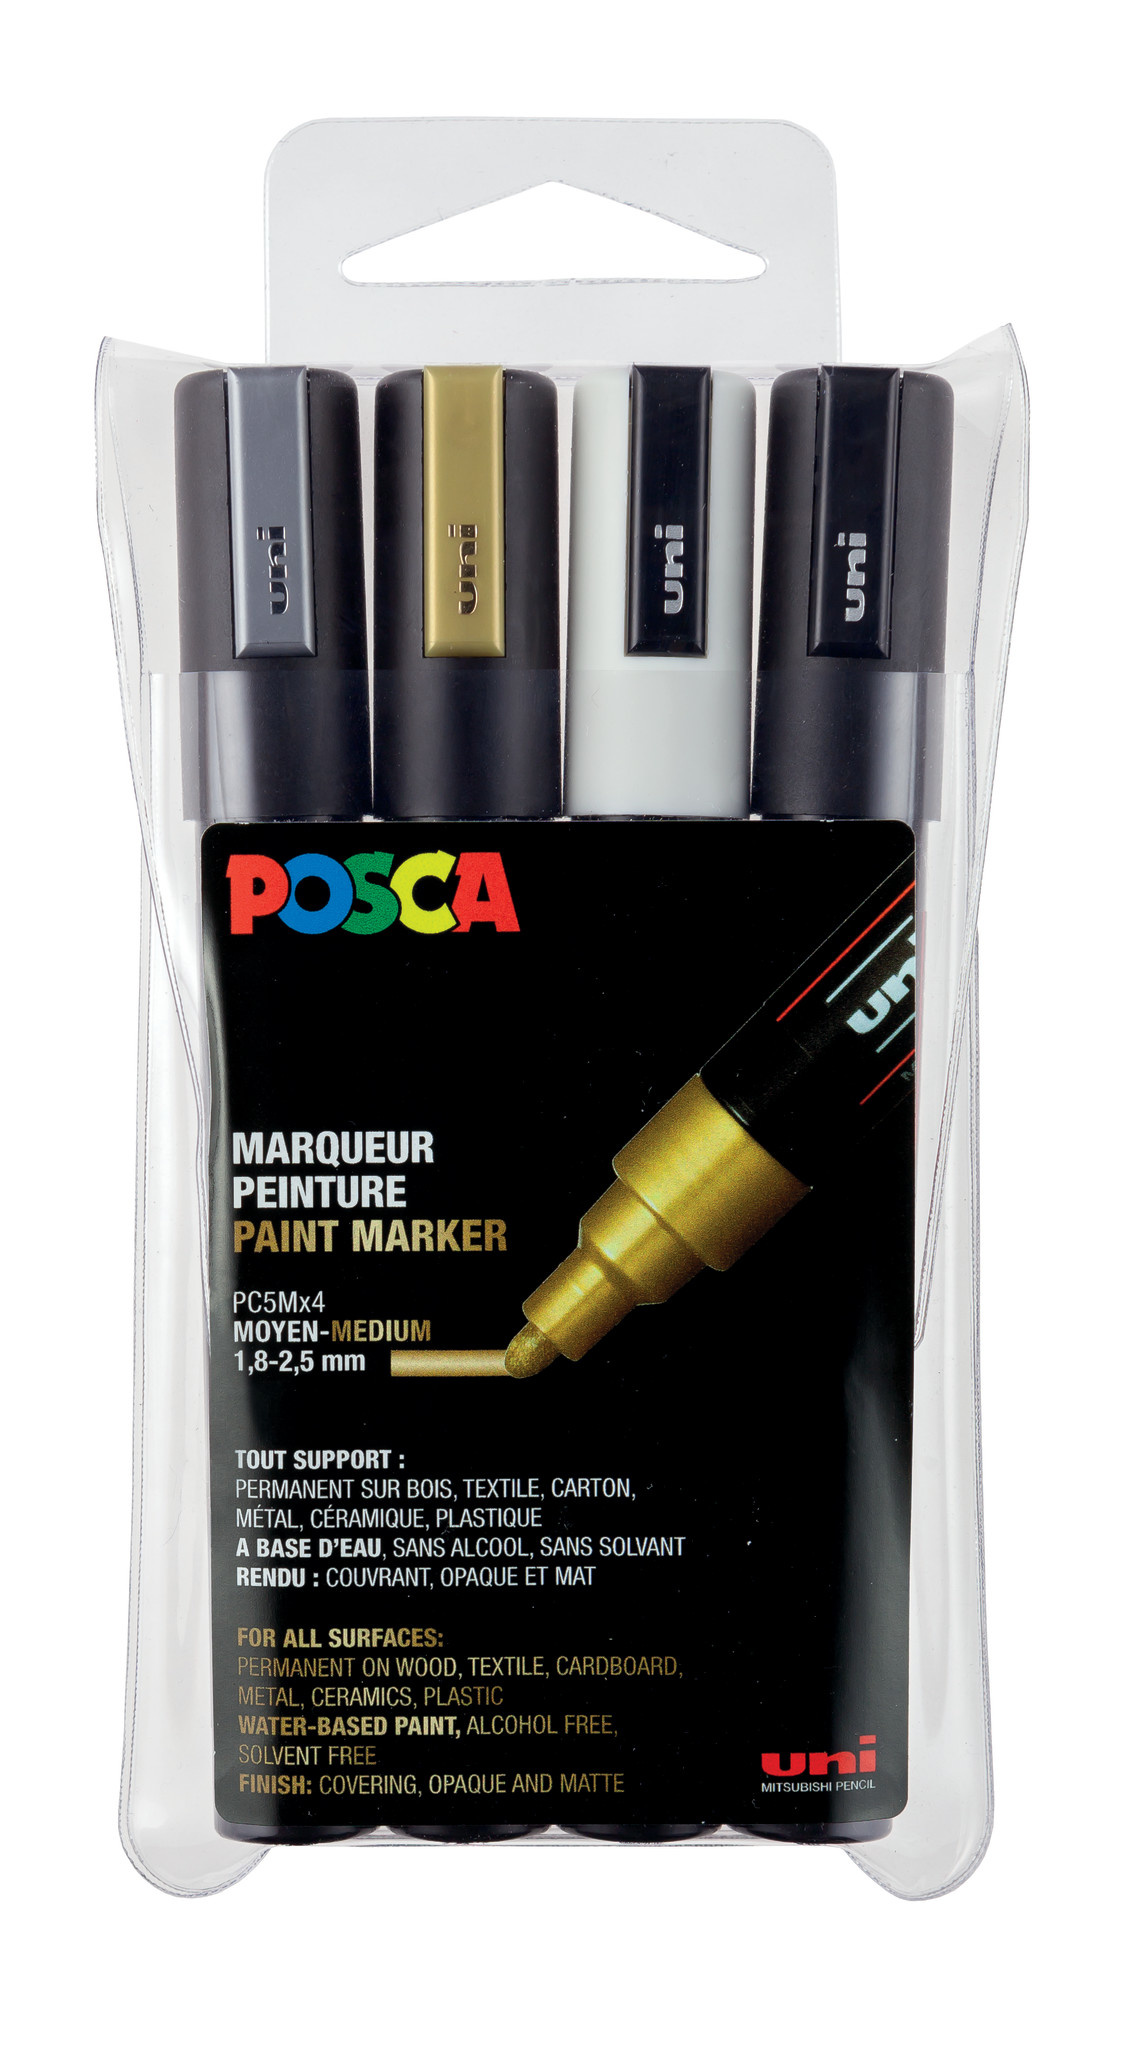 POSCA Marqueur à pigment PC-5M, étui de 4 noir, blanc, or, argent